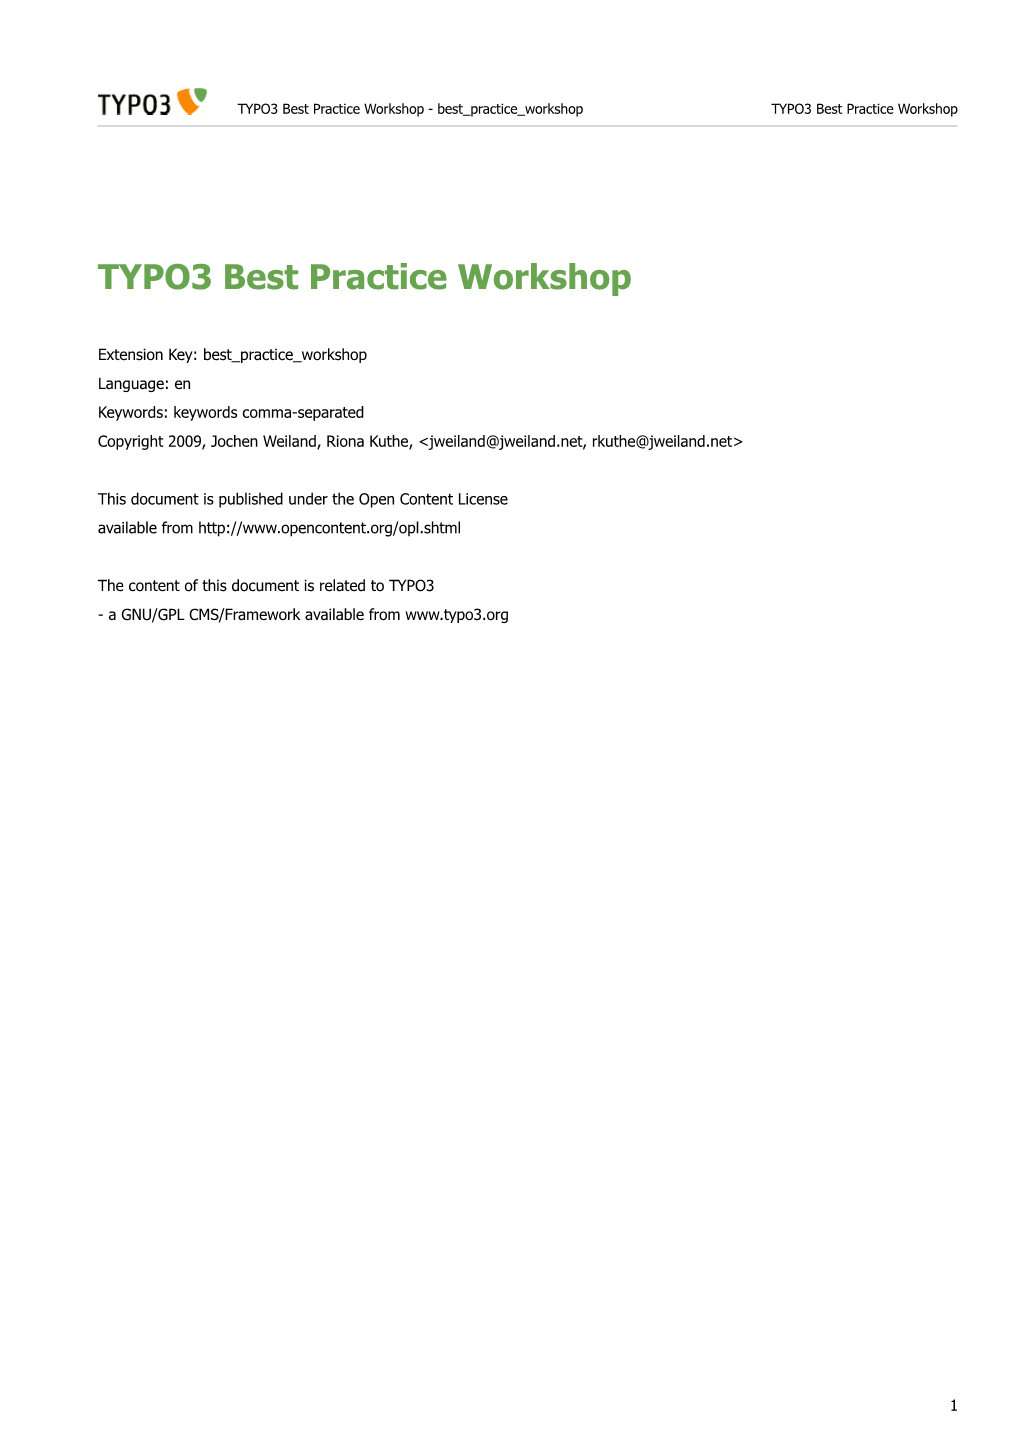 TYPO3 Best Practice Workshop - Best Practice Workshop TYPO3 Best Practice Workshop